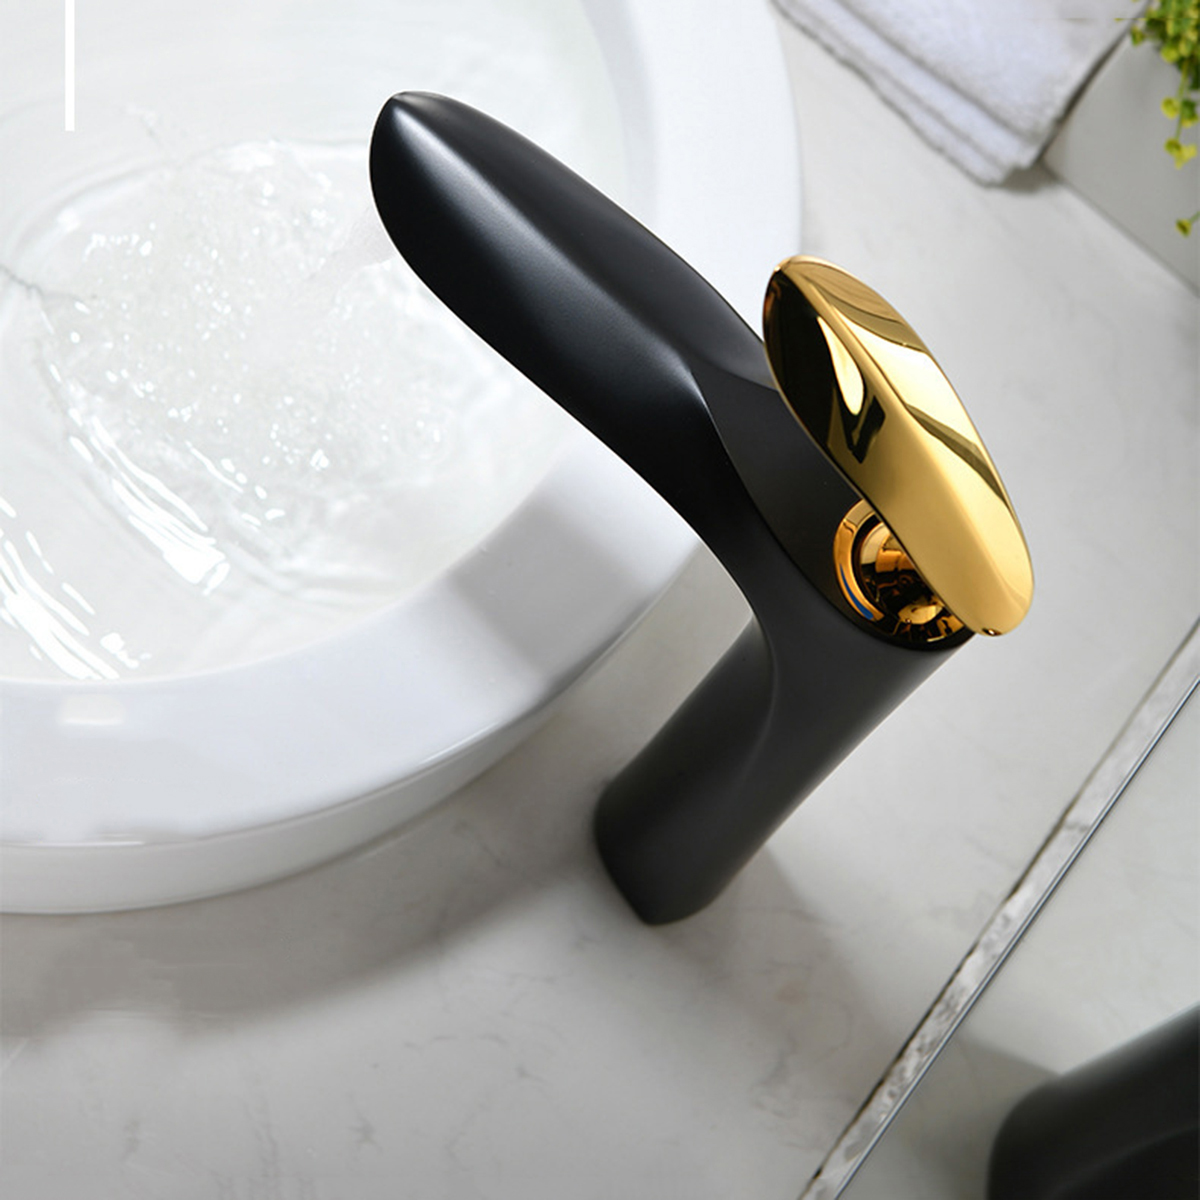 Aquacubic Messingkörper Einhand-Gold-Badezimmer-Waschraum-Waschbecken-Hahn